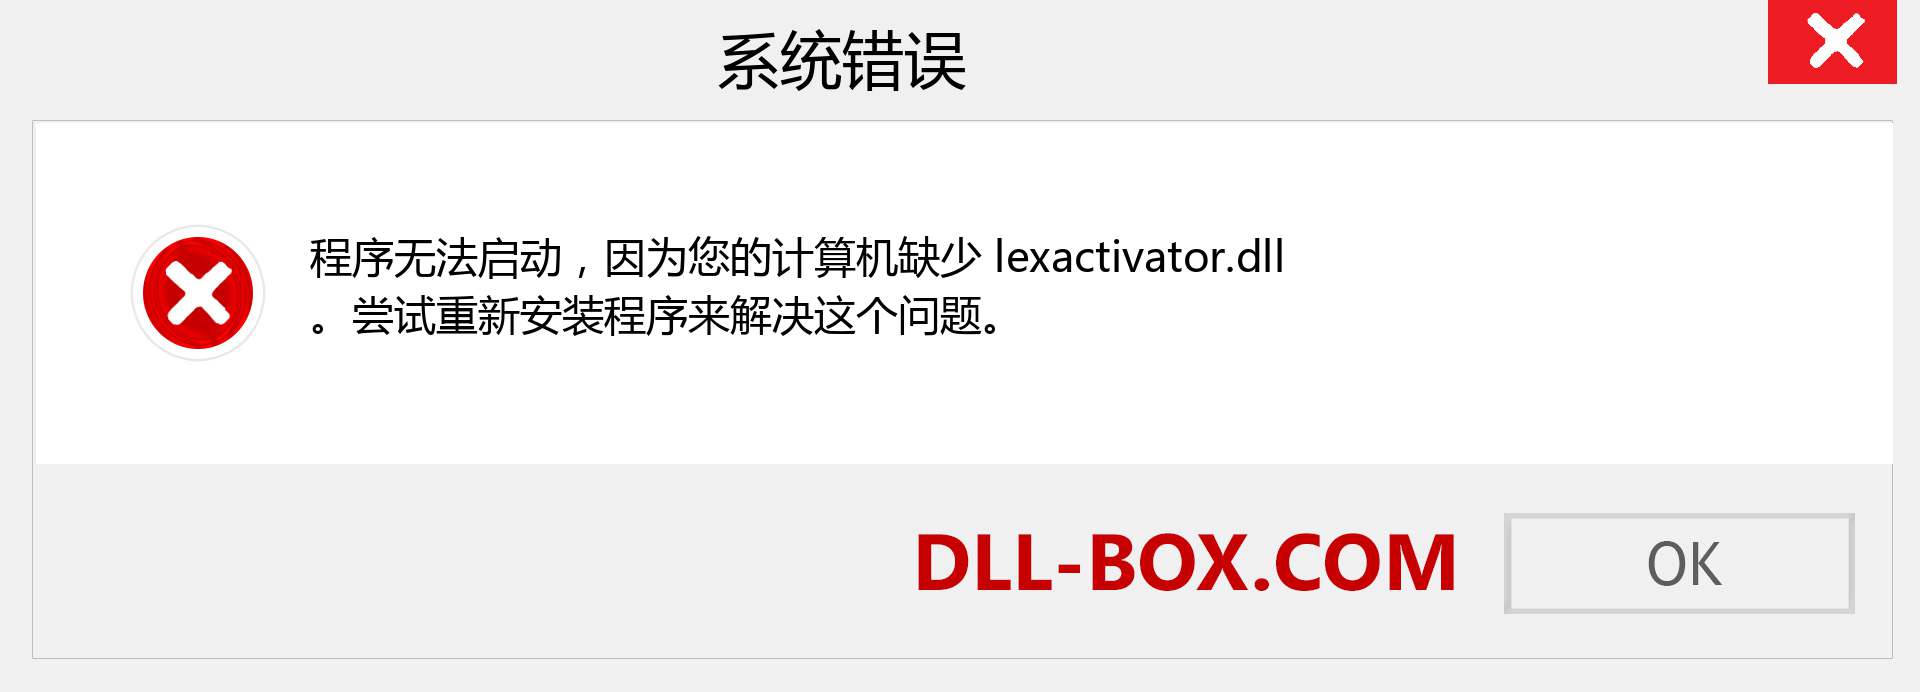 lexactivator.dll 文件丢失？。 适用于 Windows 7、8、10 的下载 - 修复 Windows、照片、图像上的 lexactivator dll 丢失错误